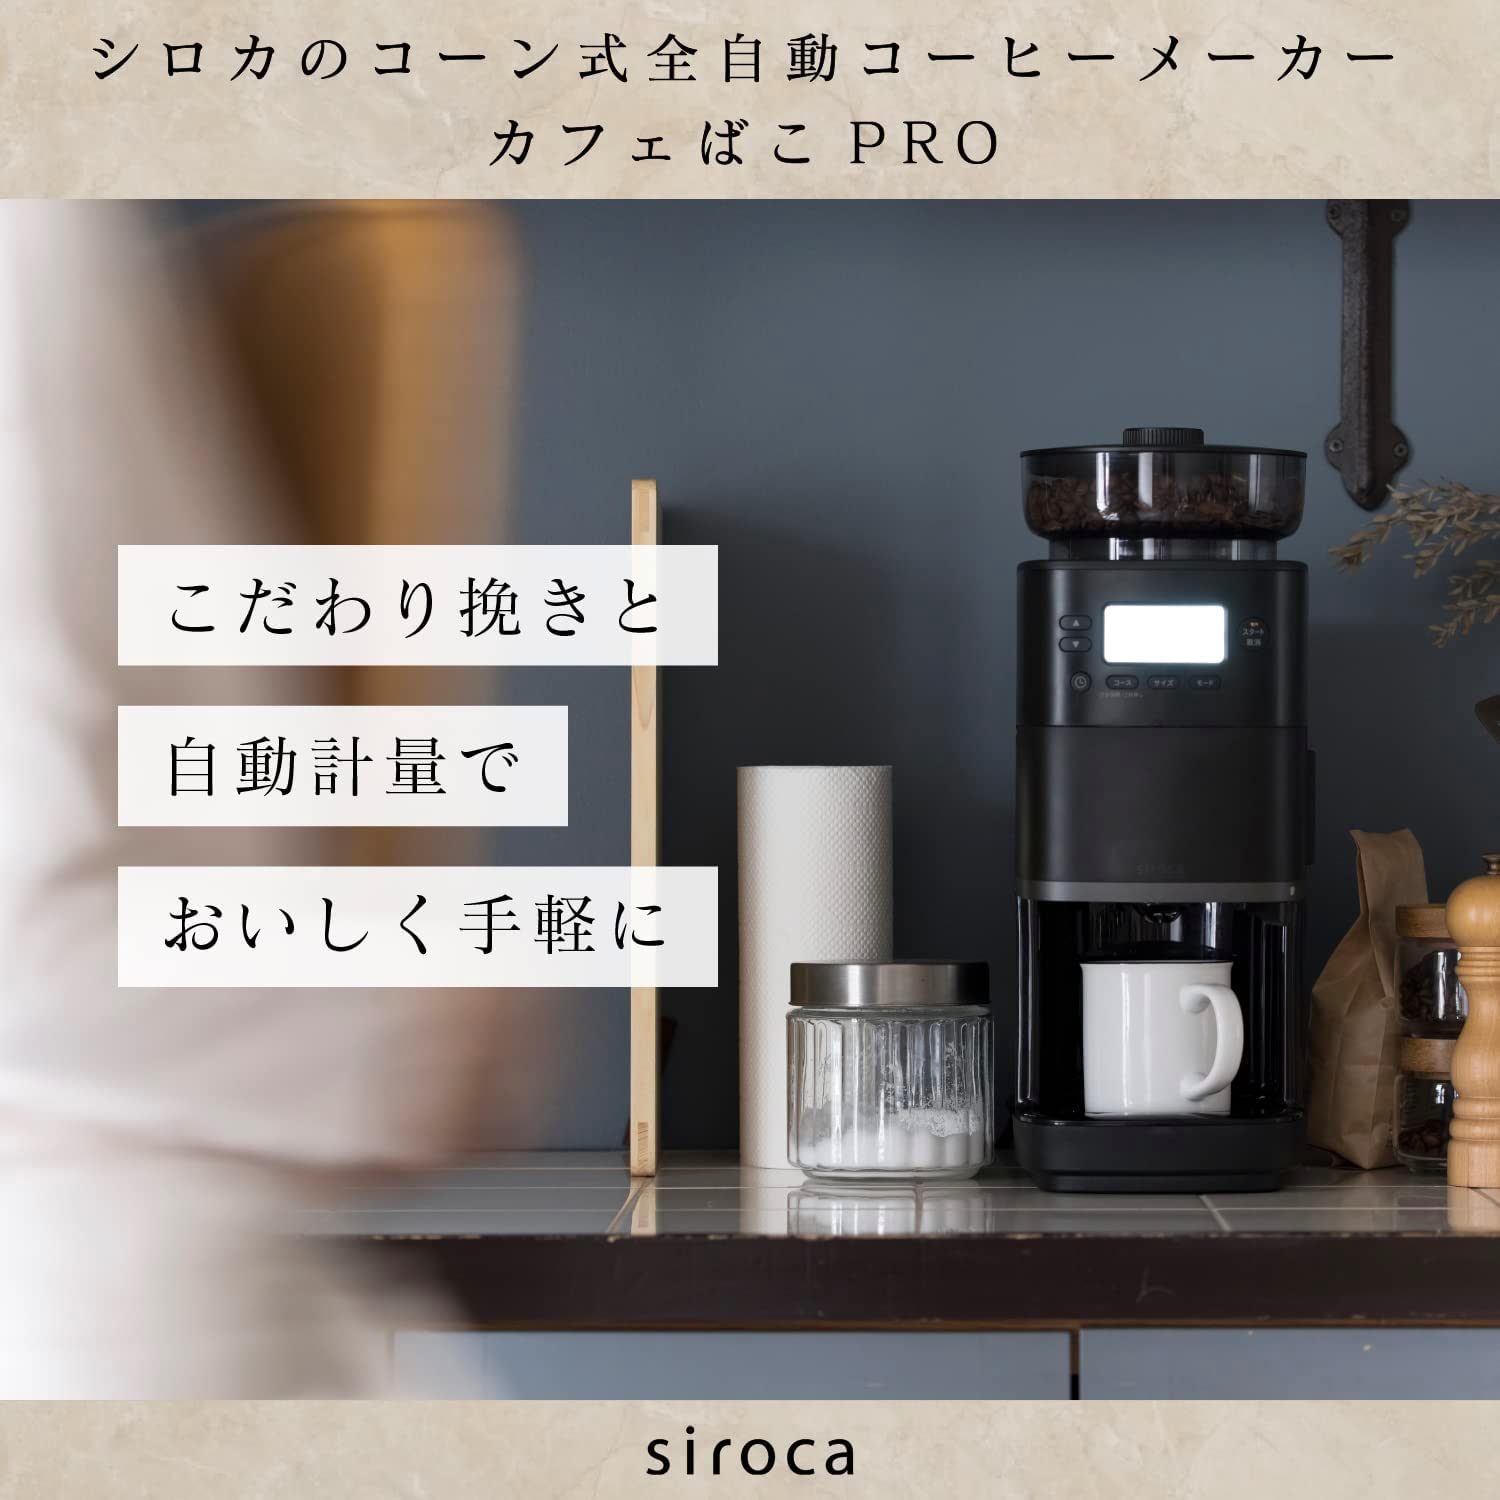 【シロカ公式限定モデル】sirocaコーン式全自動コーヒーメーカーカフェばこPROSC-C251(HL)ライトグレー